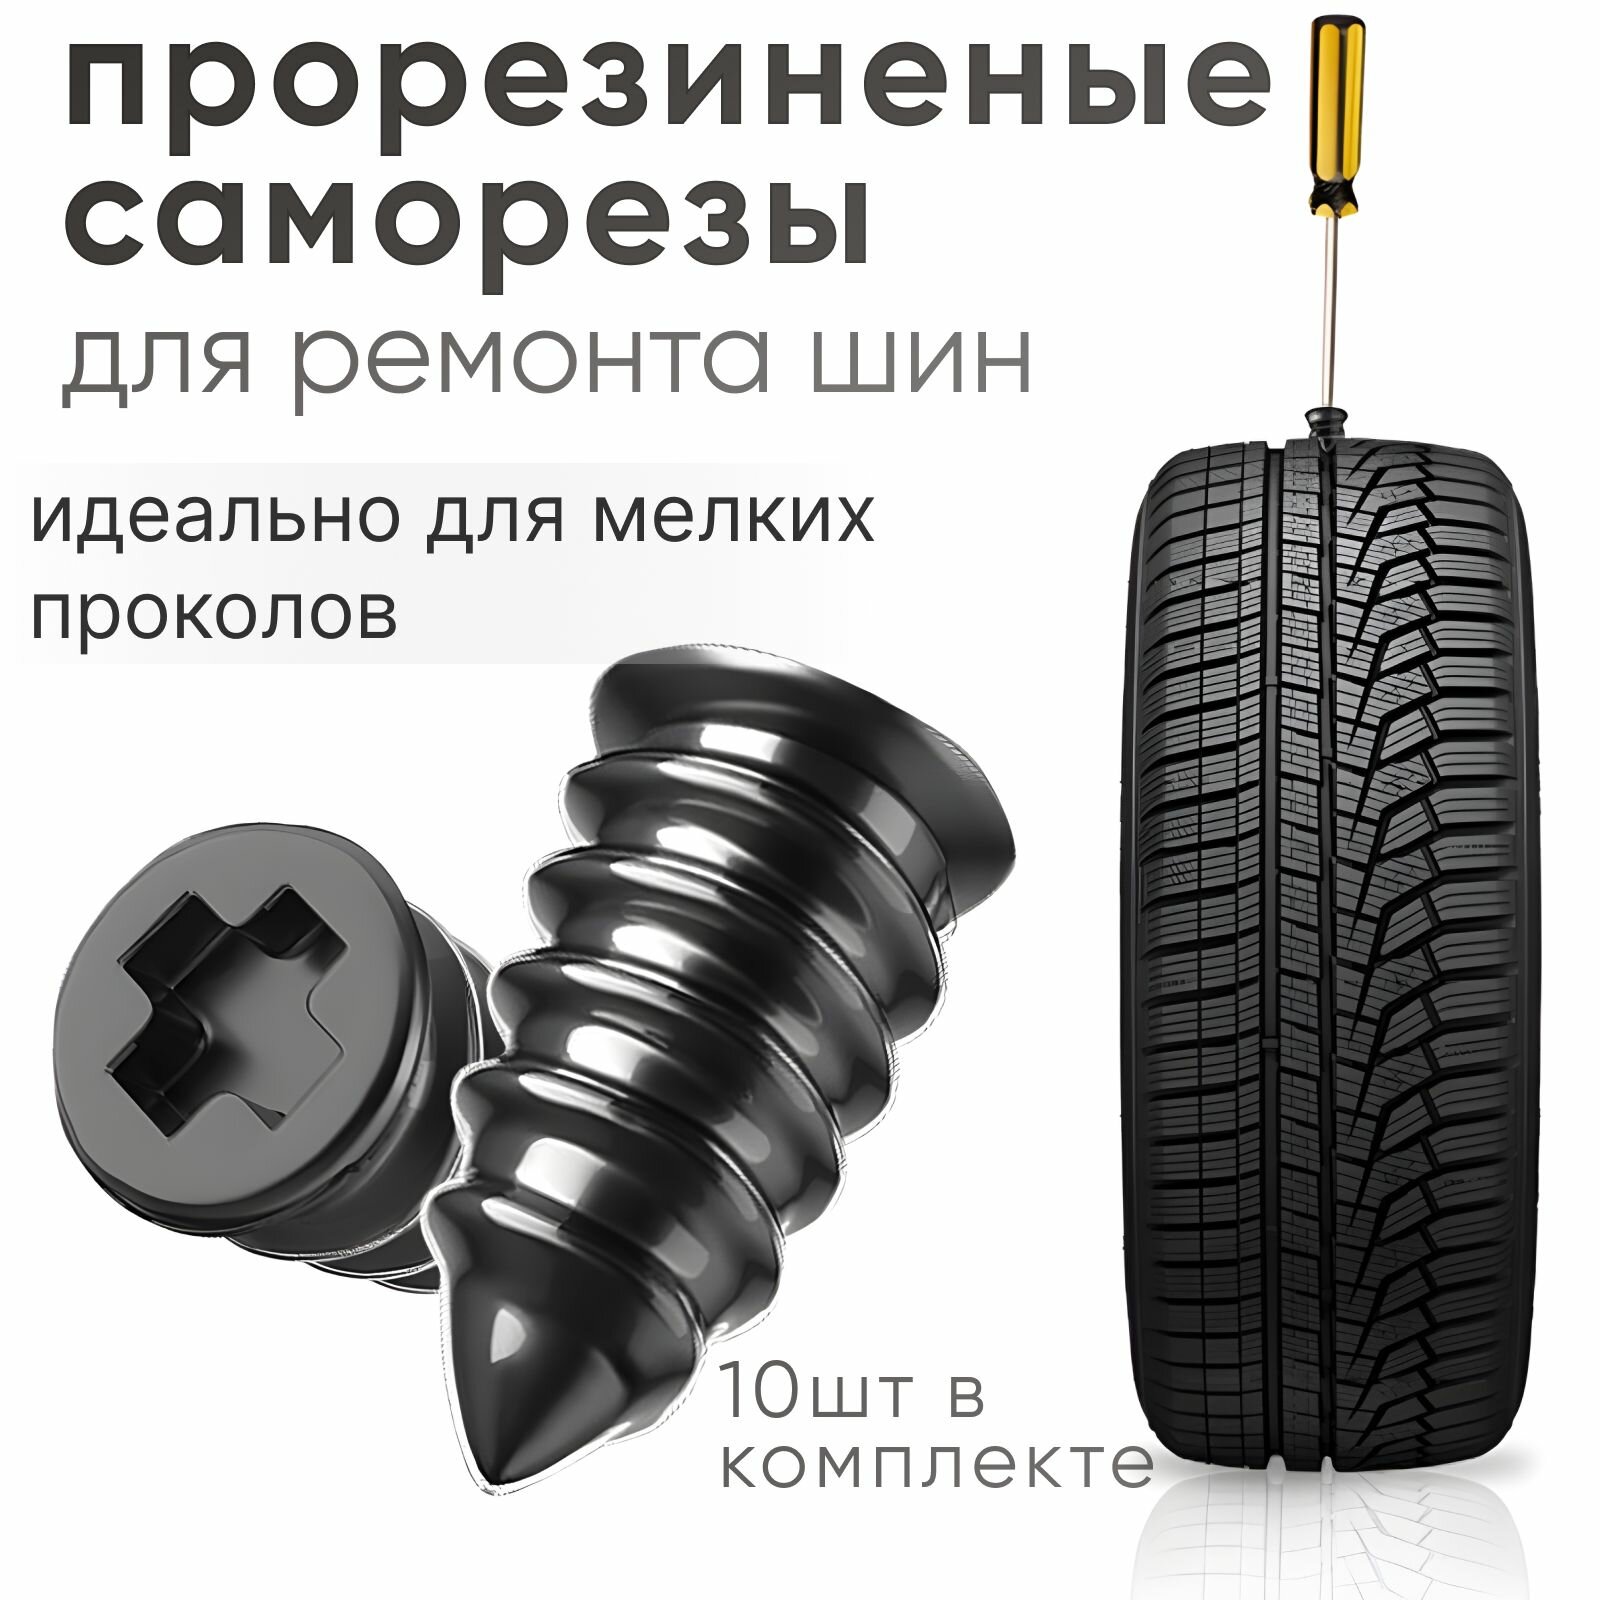 Ремкомплект для шин, набор резиновых гвоздей для ремонта автомобильных и мотоциклетных шин 10шт